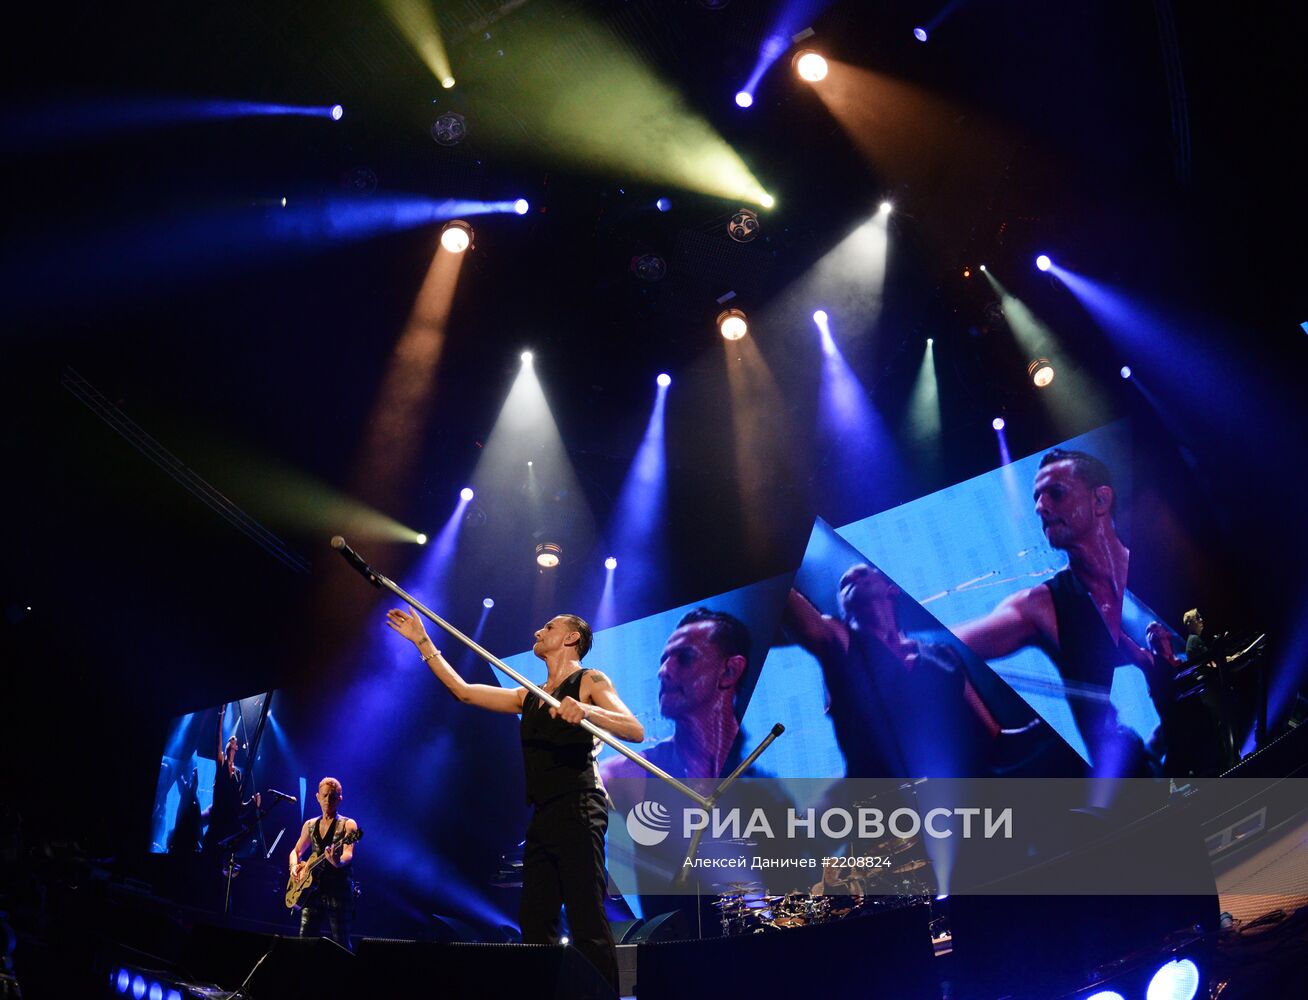 Концерт Depeche Mode в Санкт-Петербурге